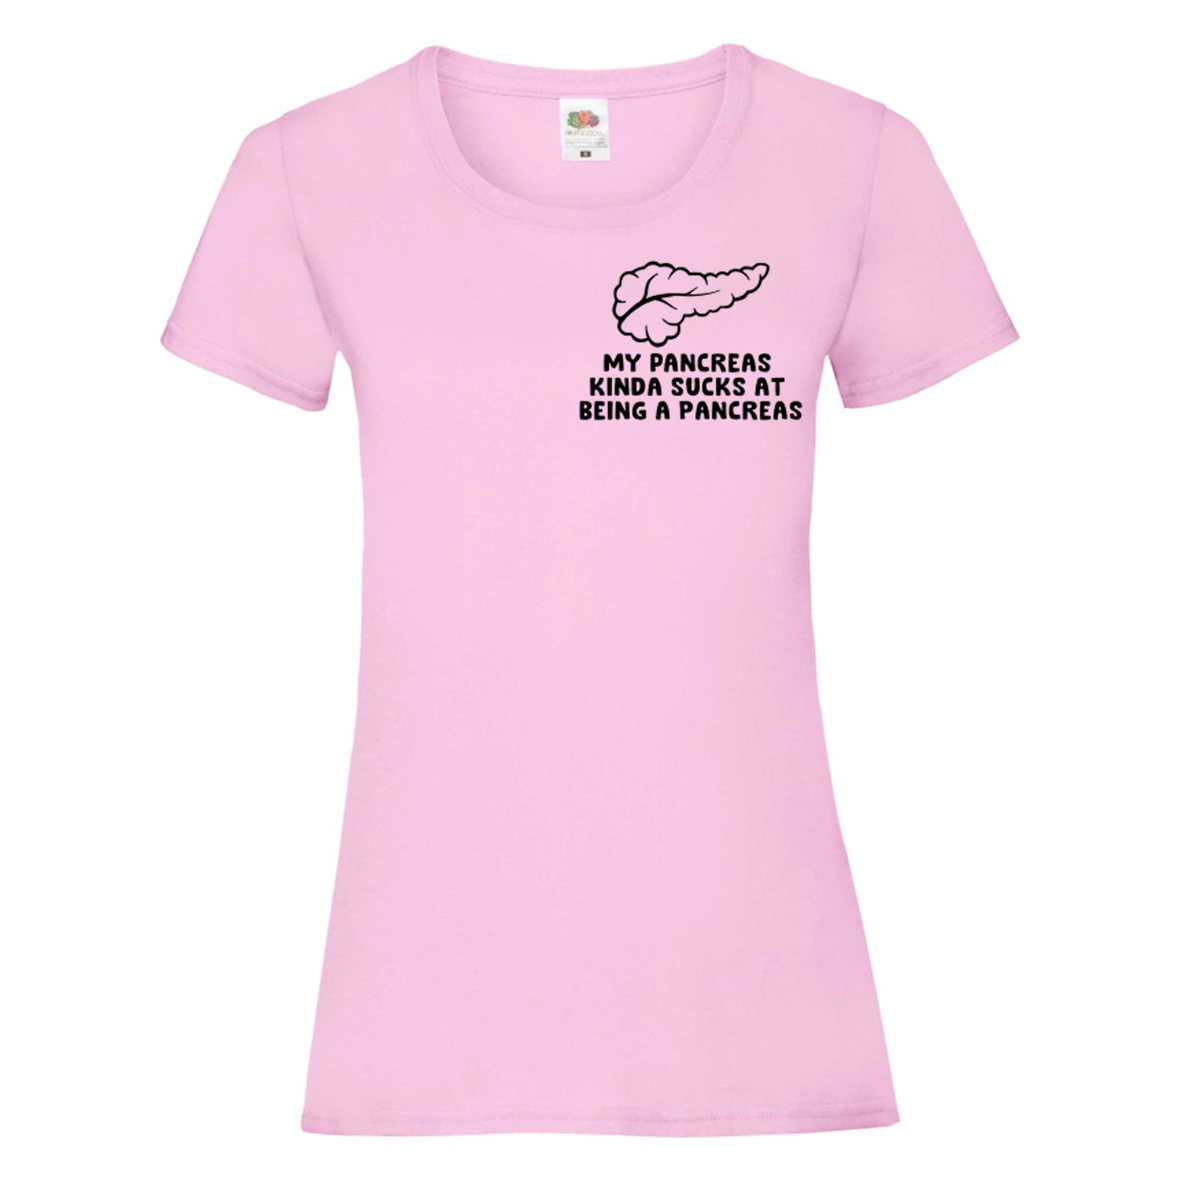 My Pancreas Kinda Sucks At Being A Pancreas Women's T Shirt